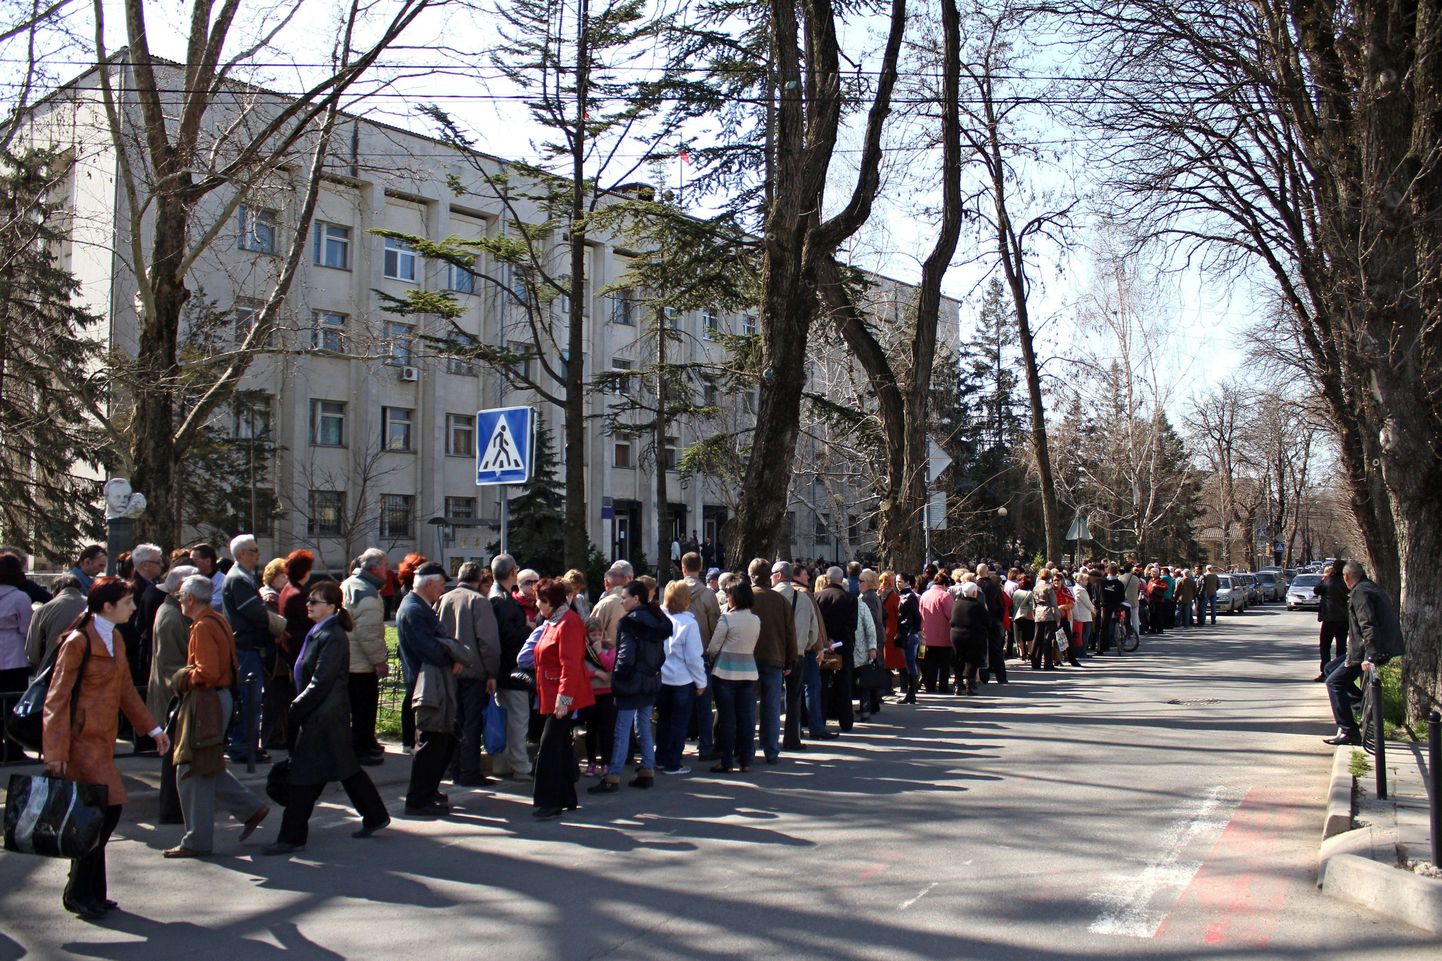 Sajad inimesed võtsid täna Simferopolis Vene passi saamiseks järjekorda.